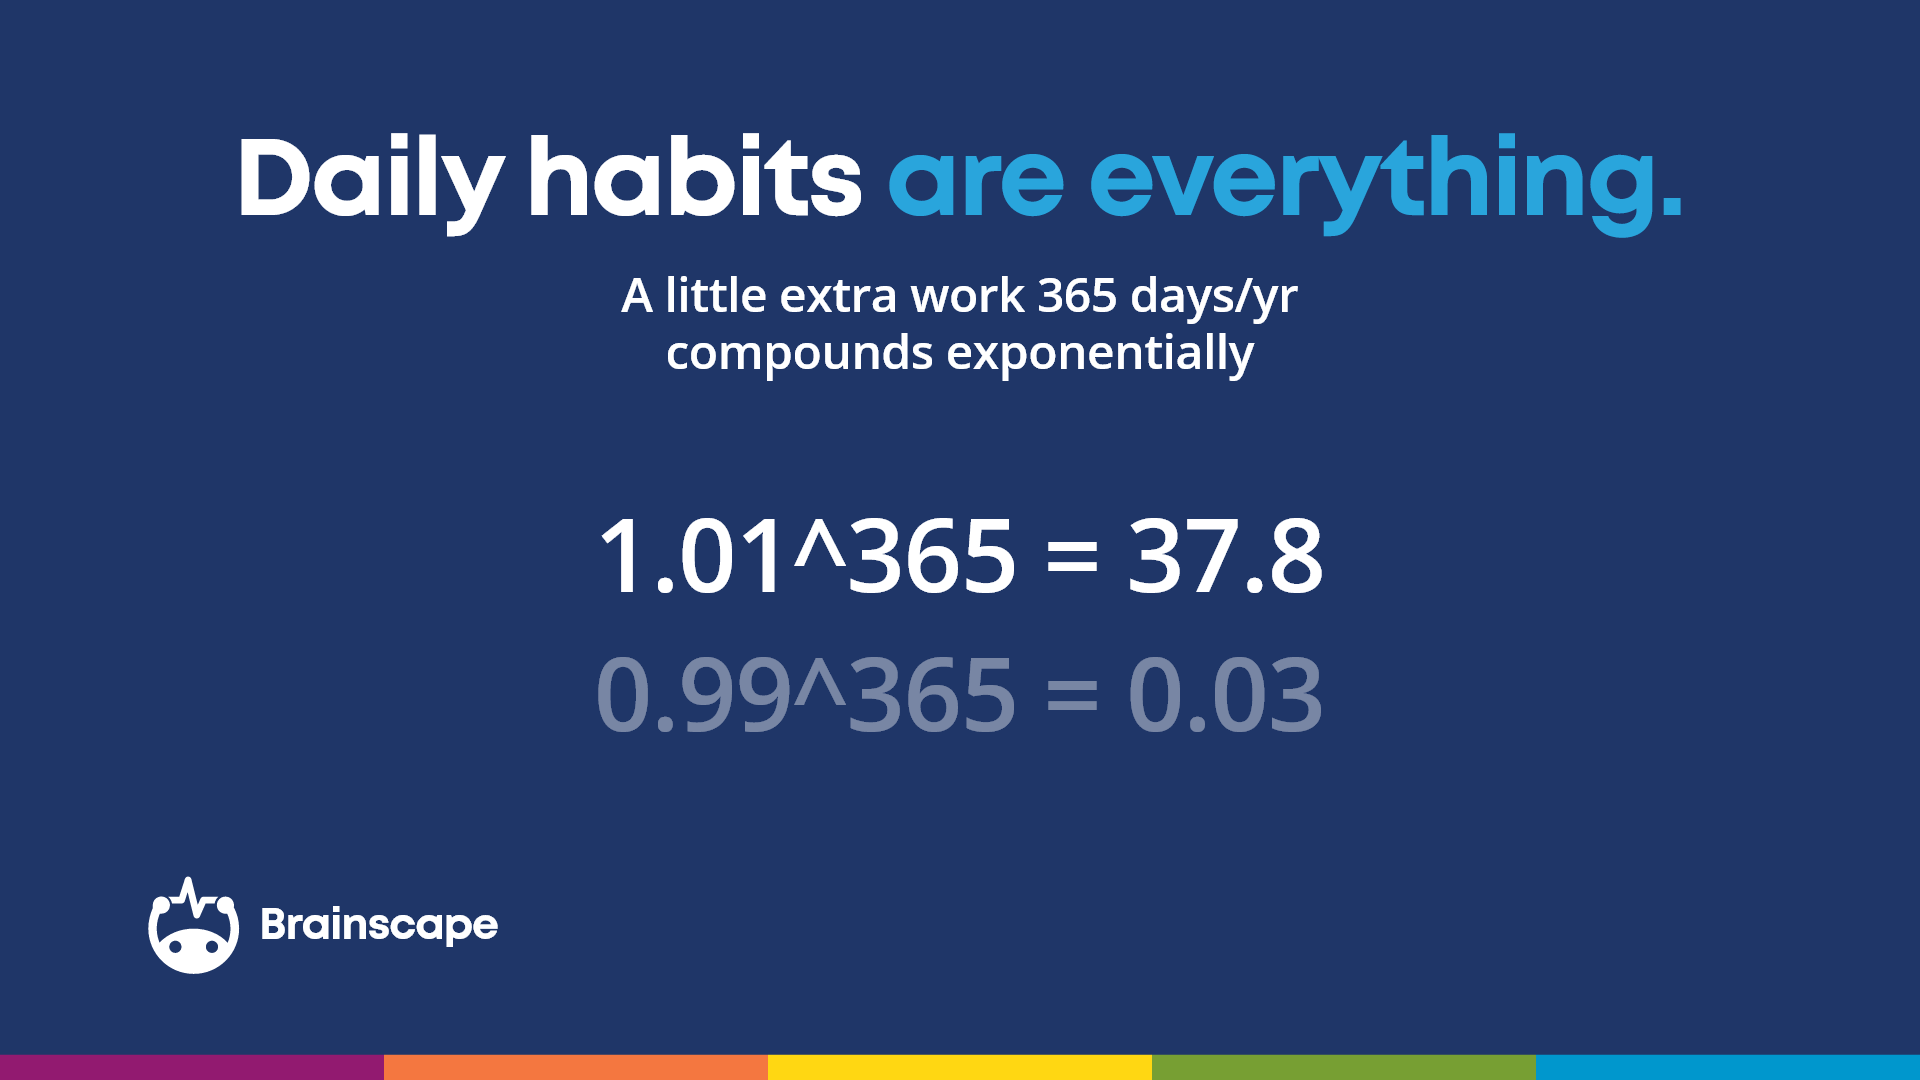 Fórmula que muestra que los hábitos diarios conducen a un aprendizaje exponencialmente mejor